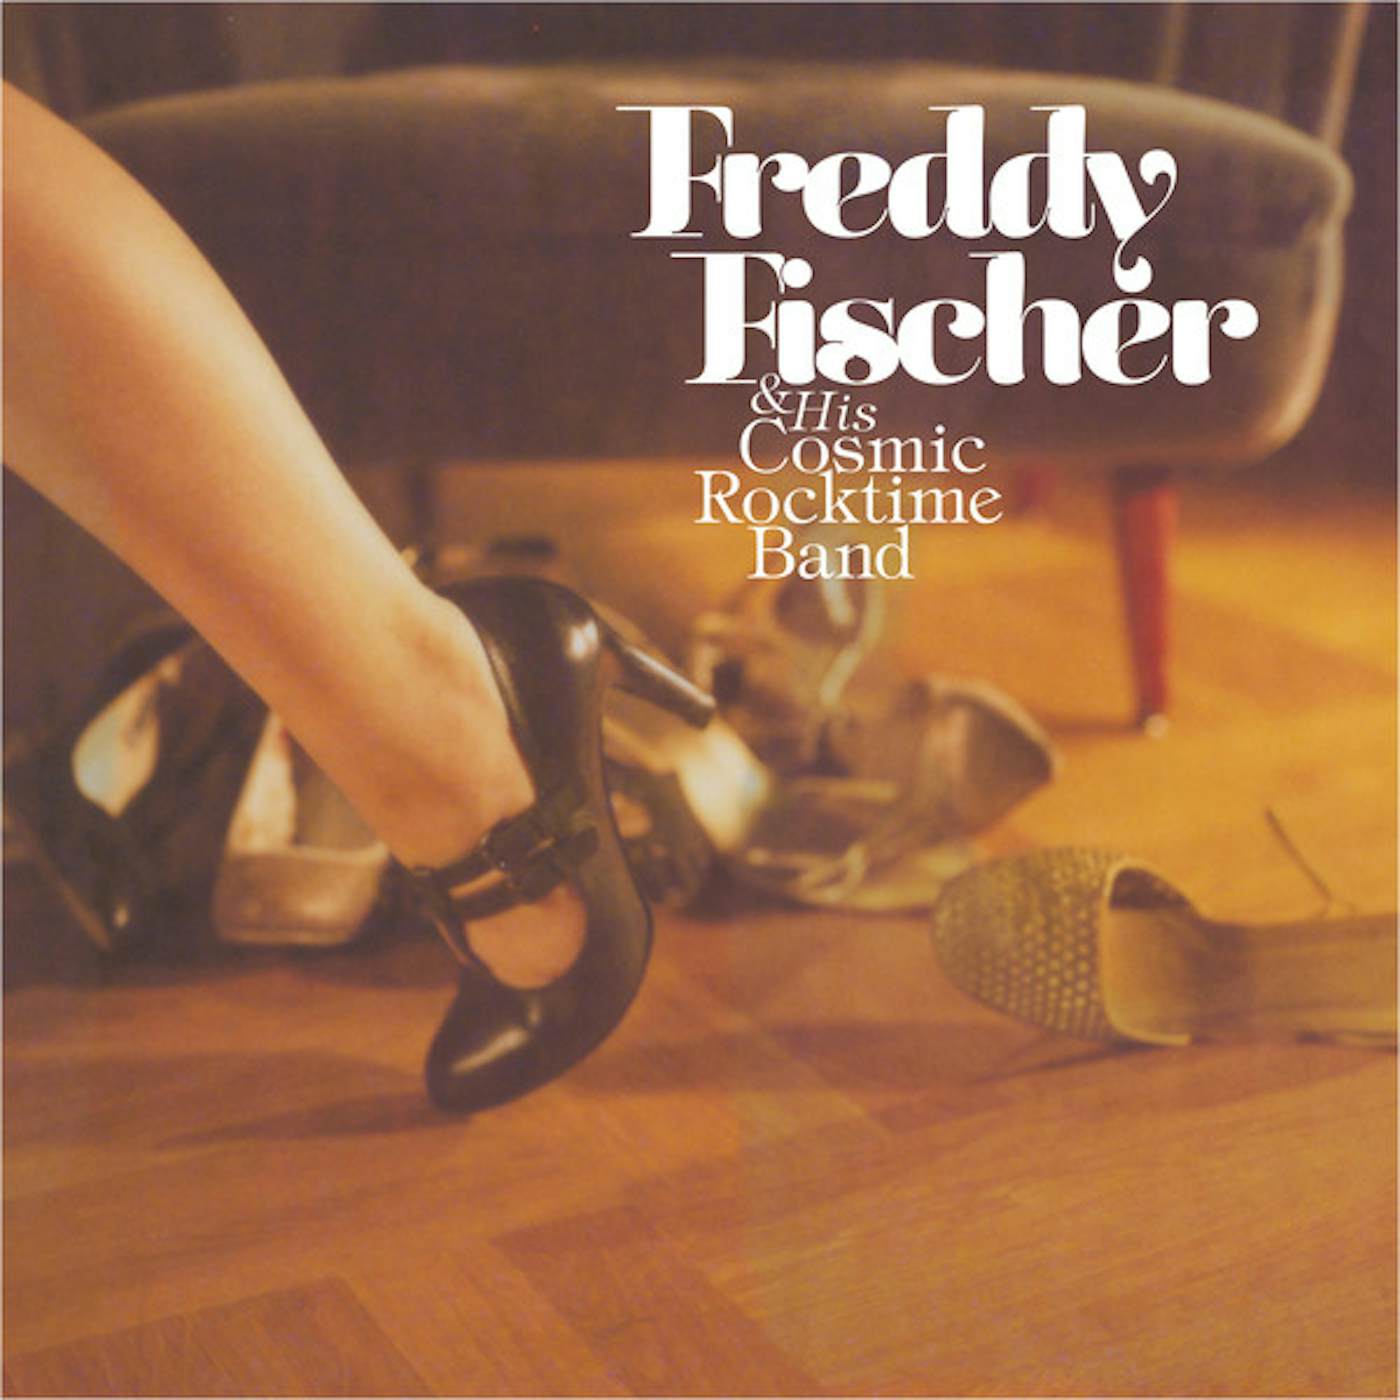 Freddy Fischer & His Cosmic Rocktime Band Schuhe raus und tanzen gehen Vinyl Record